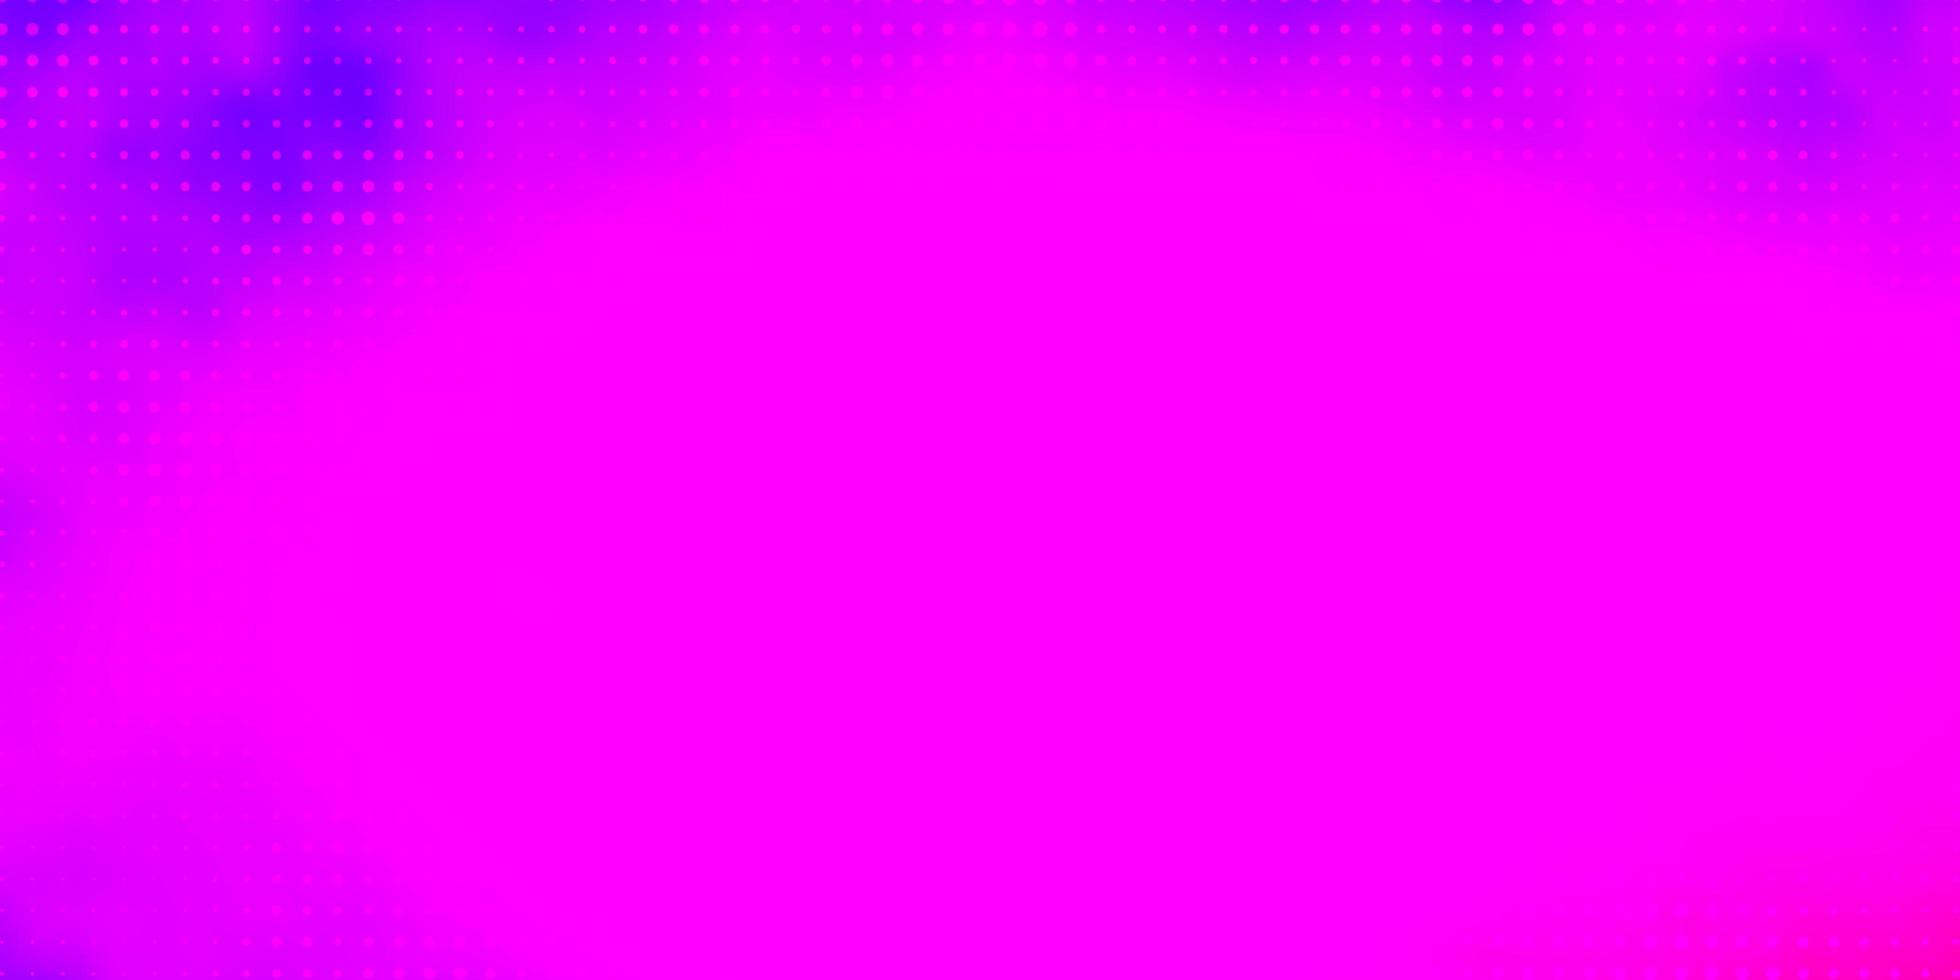 Fondo de vector violeta, rosa claro con círculos. Ilustración colorida con puntos degradados en estilo natural. diseño para sus comerciales.